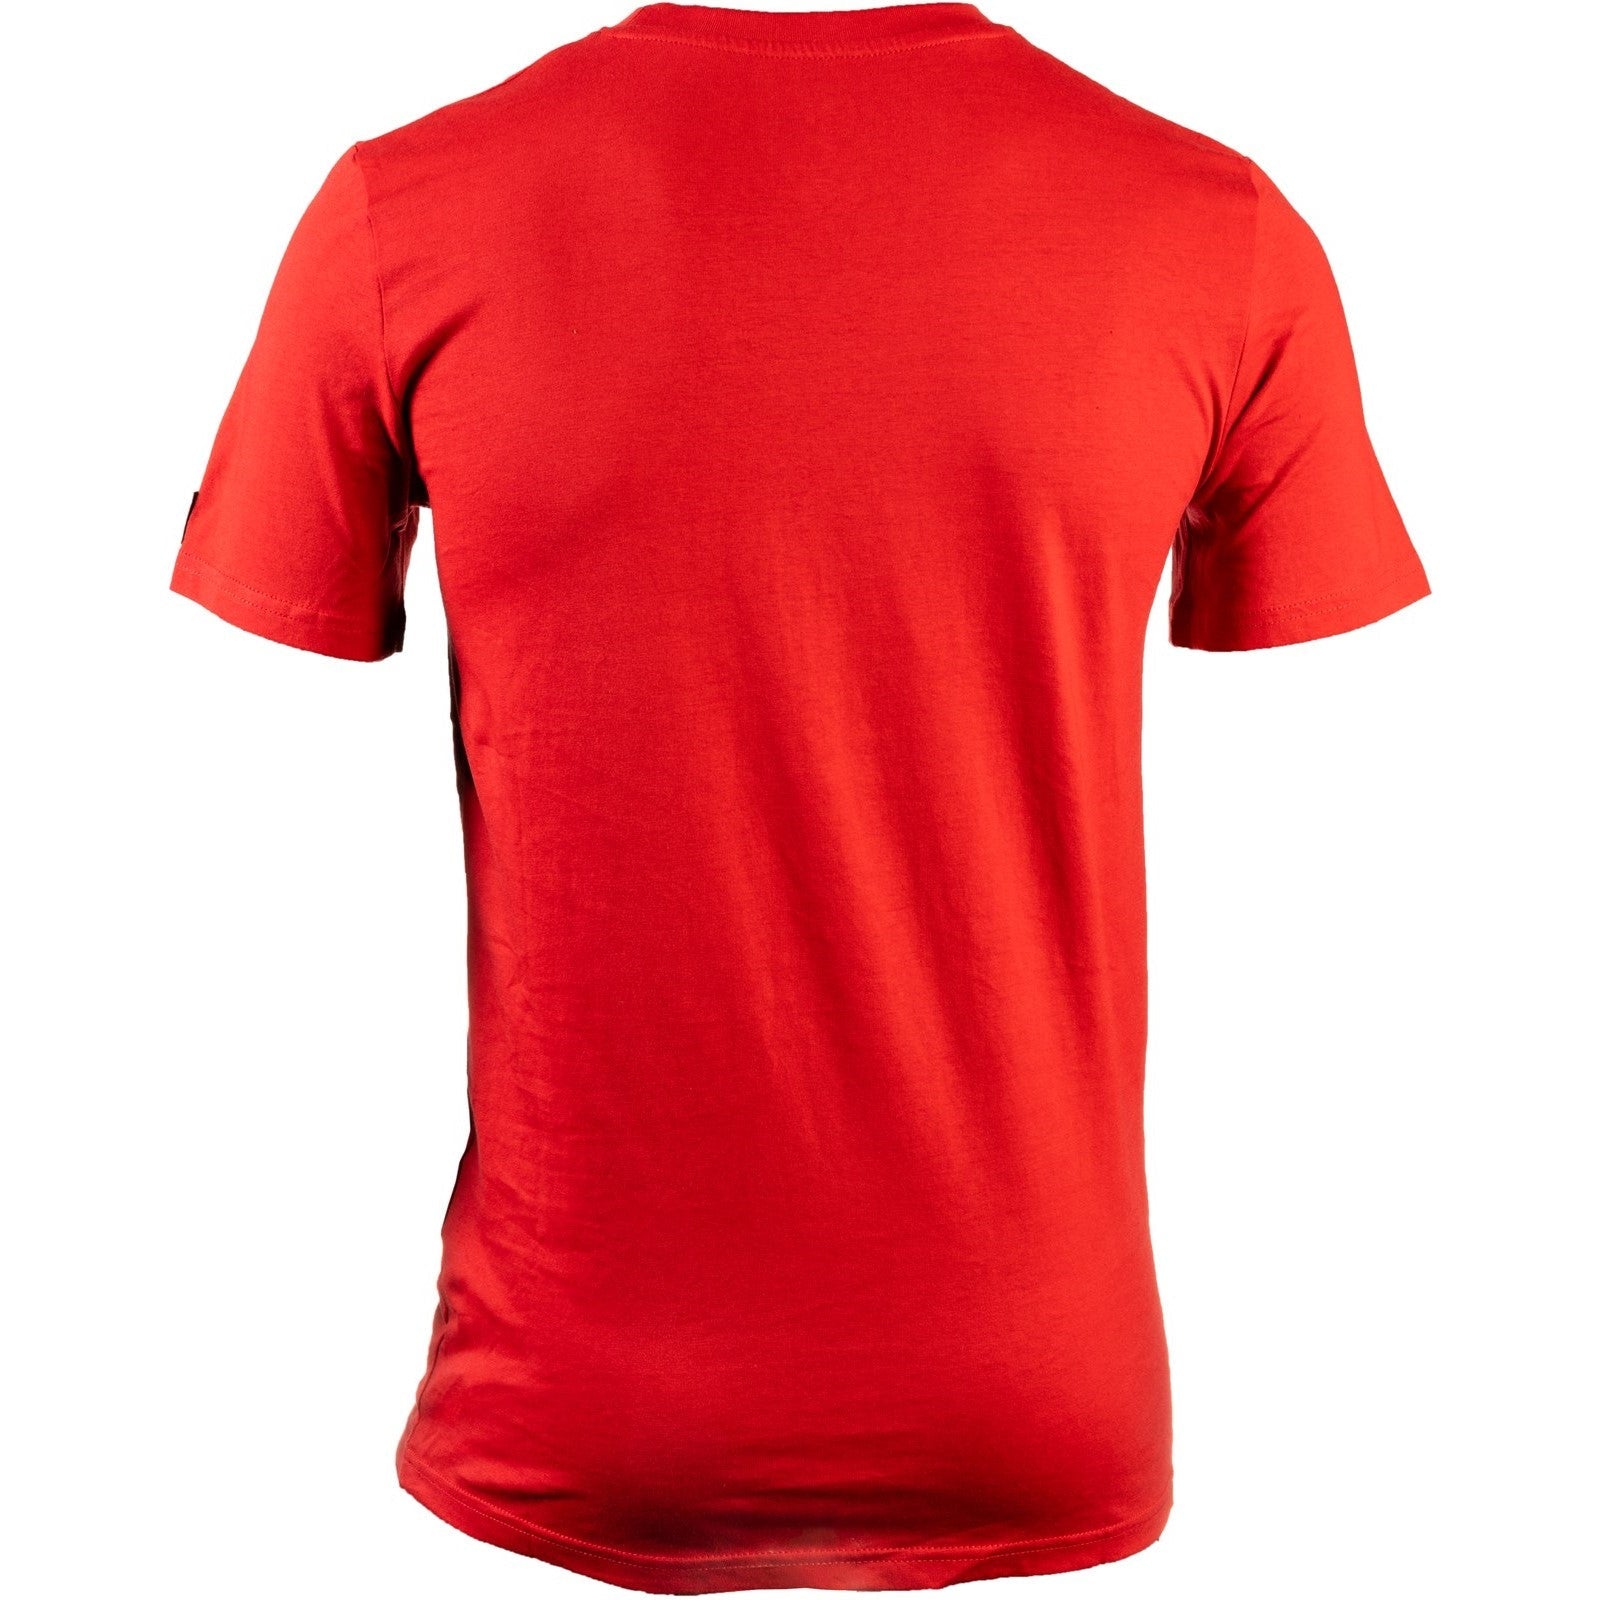 Caterpillar Essentials Short Sleeve T Shirt. Hot Red. Rear View  